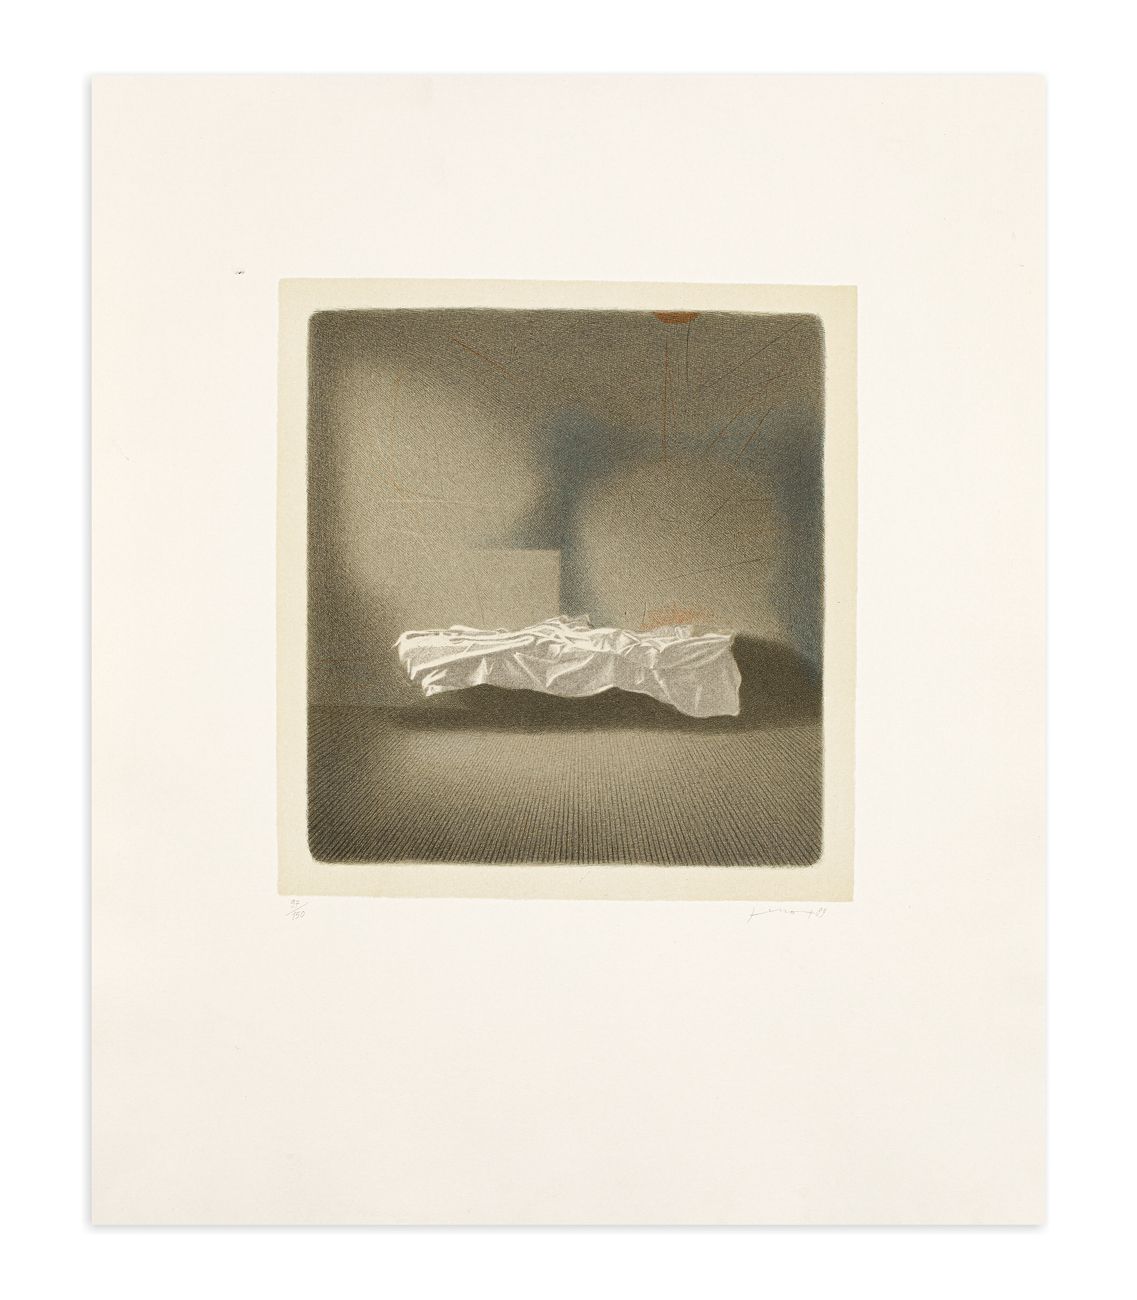 GIANFRANCO FERRONI (1927-2001) - Lettino, 1989 Litografia su fondino

cm 60x50

&hellip;